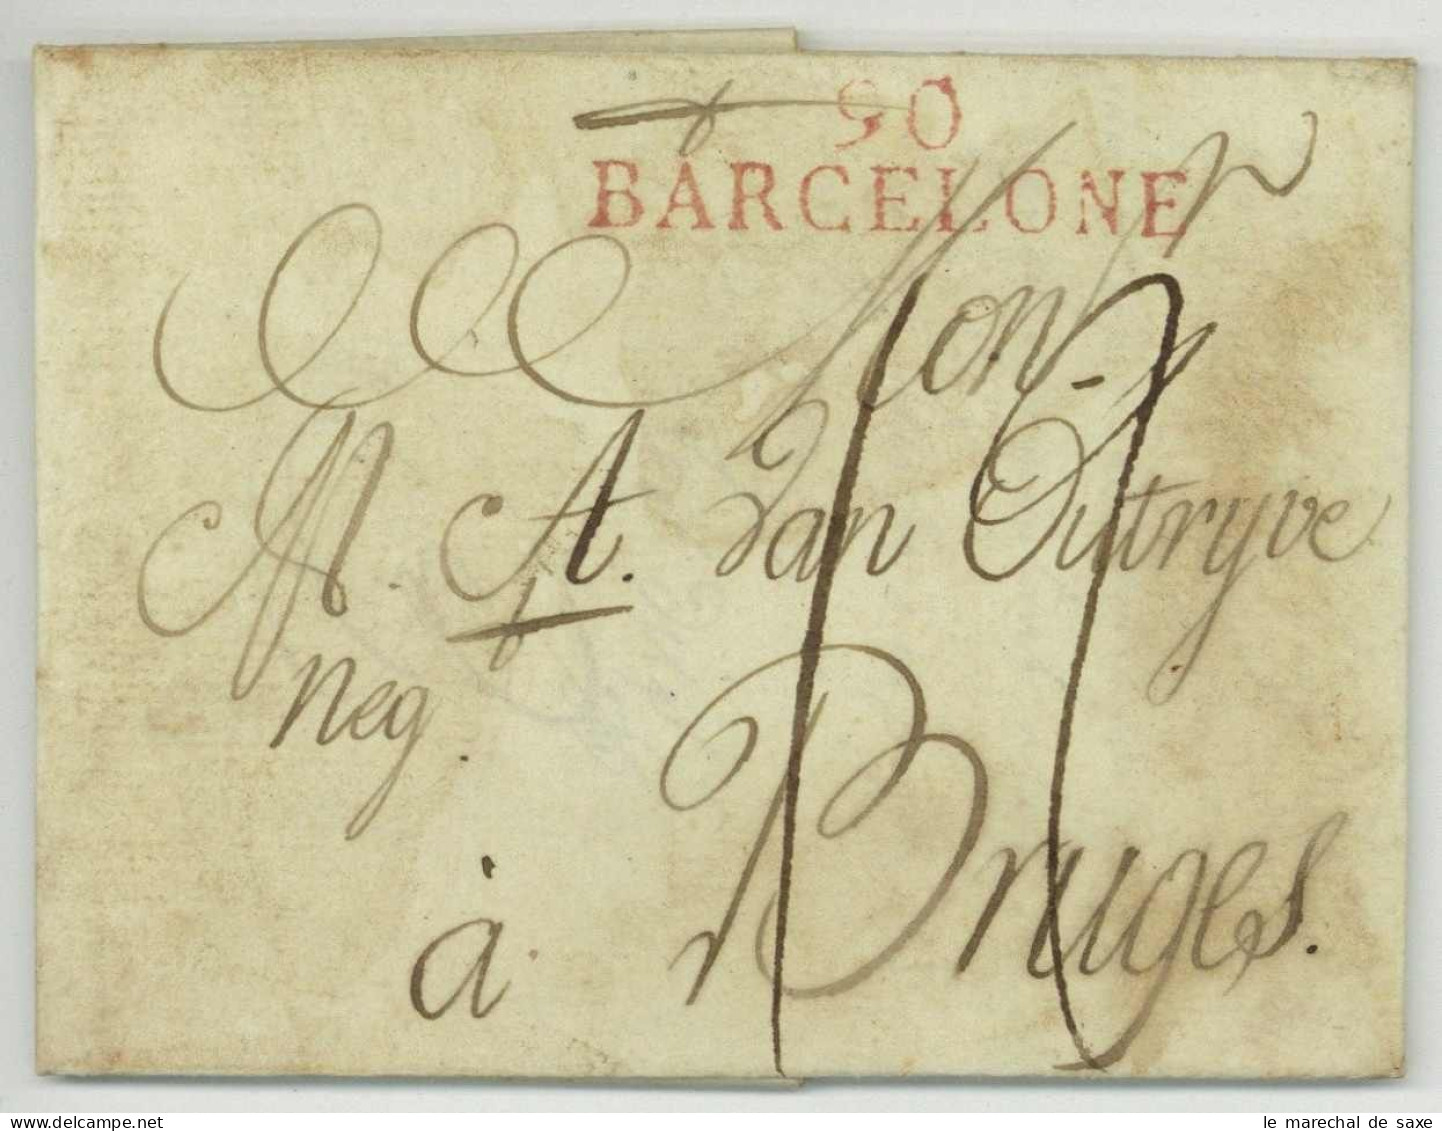 90 BARCELONE Barcelona 1813 Pour Bruges Belgique Desinfectée Purifiée Desinfected Mail - 1792-1815: Dipartimenti Conquistati